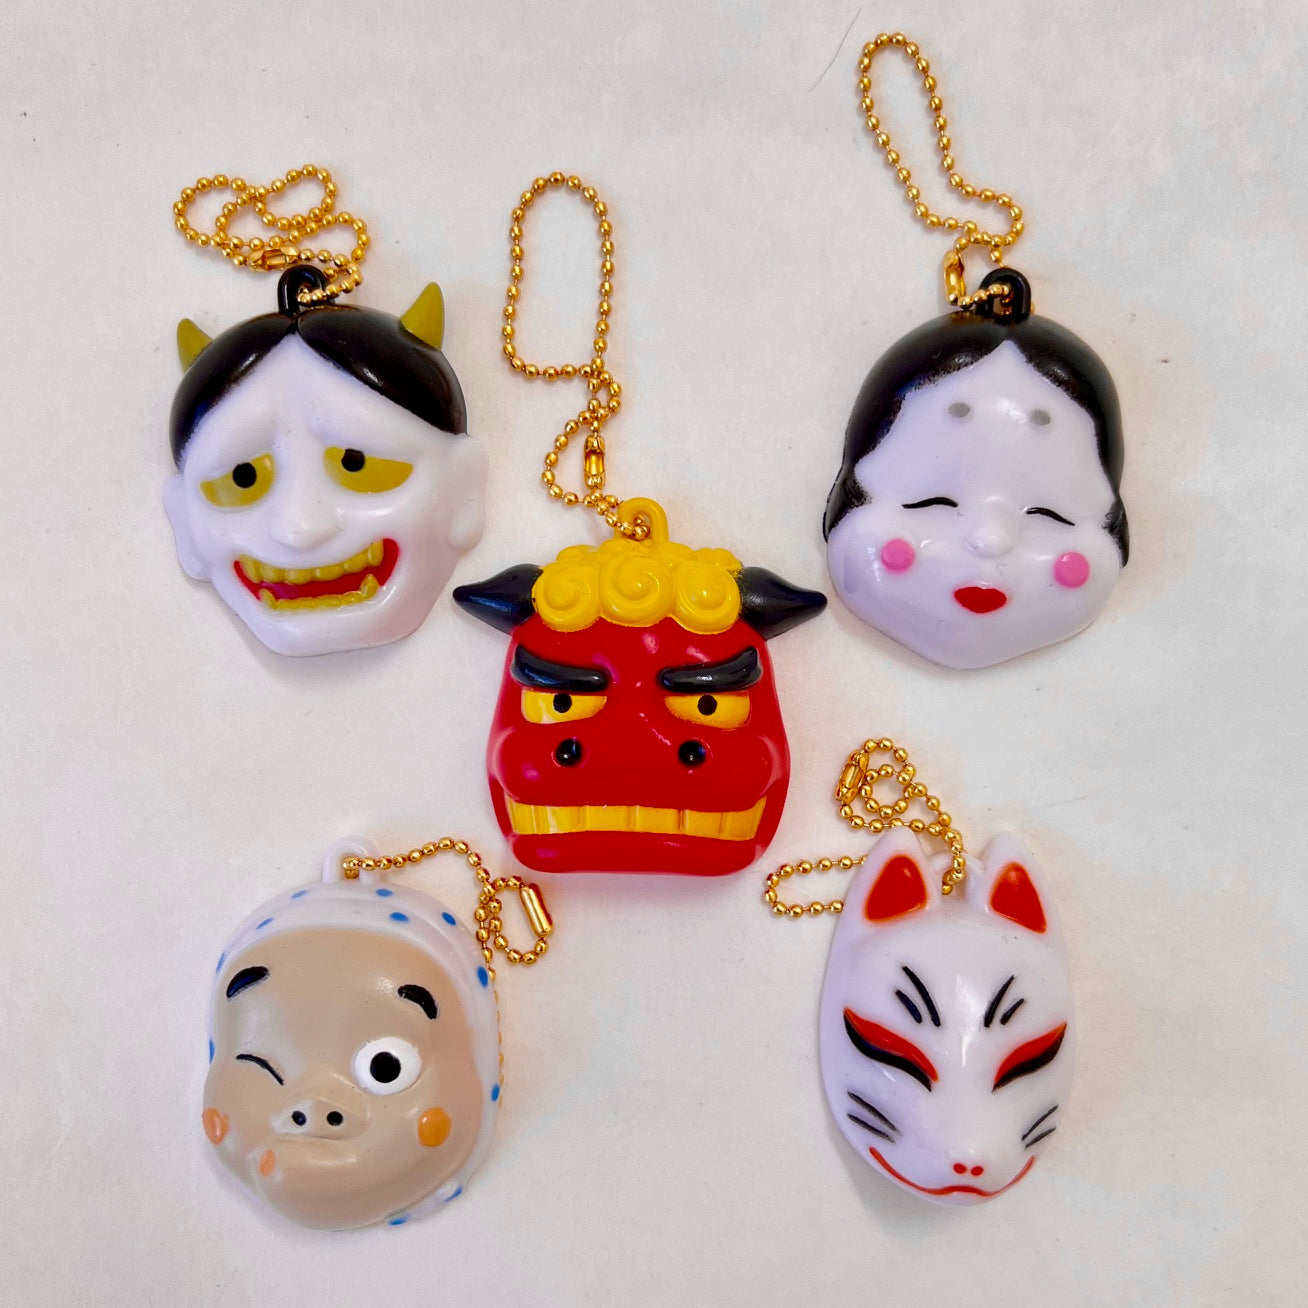 70327 Japanese Masks Figurine Capsule-5